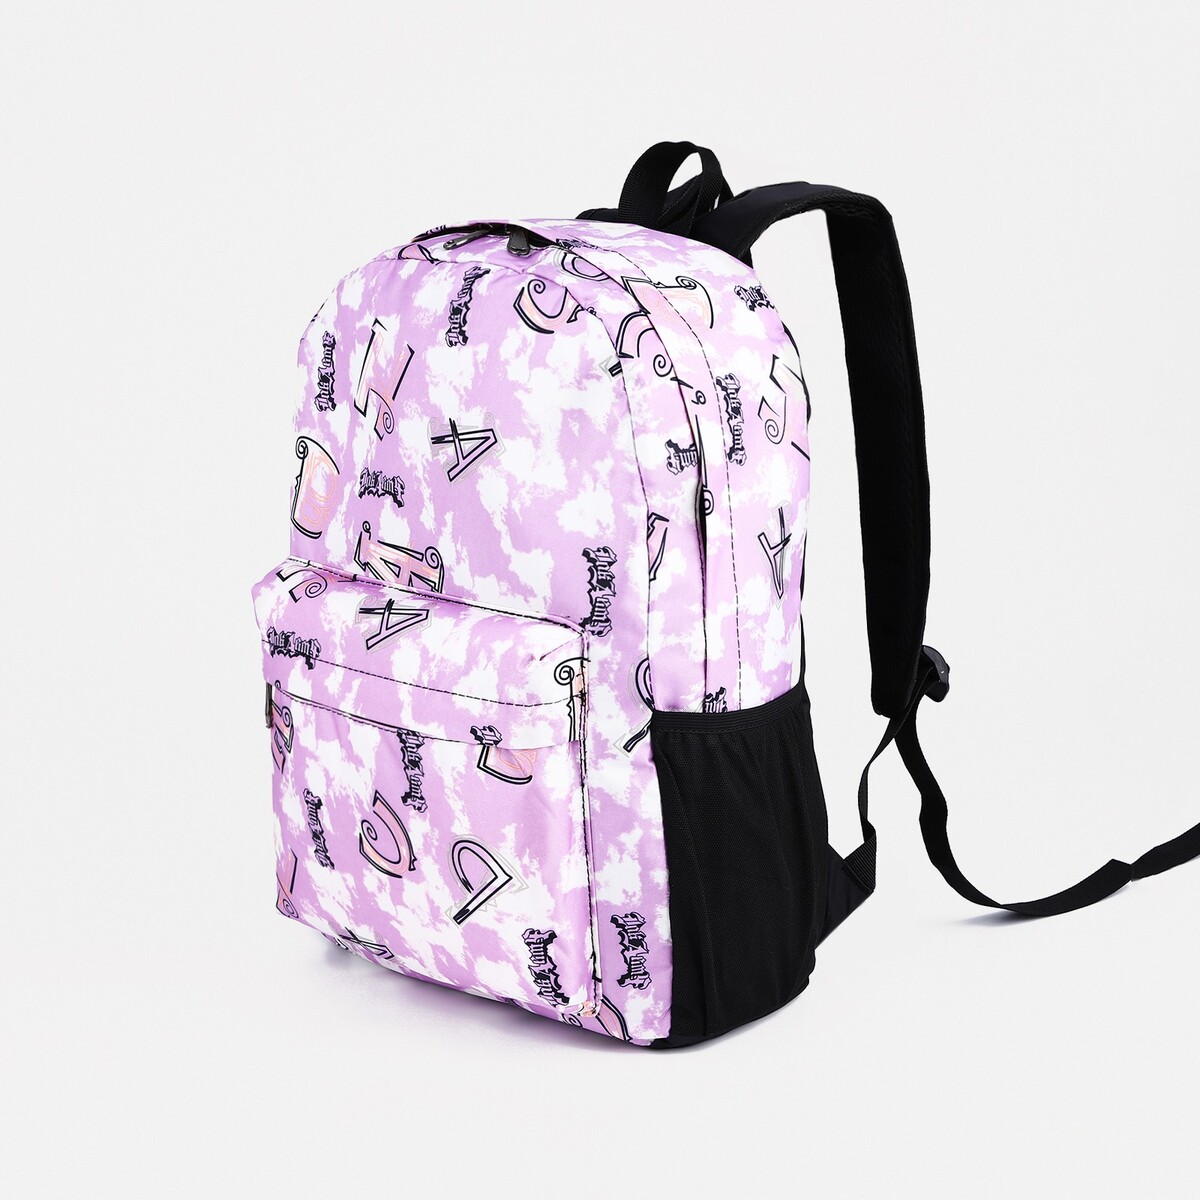 Рюкзак школьный из текстиля на молнии, 3 кармана, цвет фиолетовый сумка молодежная на молнии фиолетовый